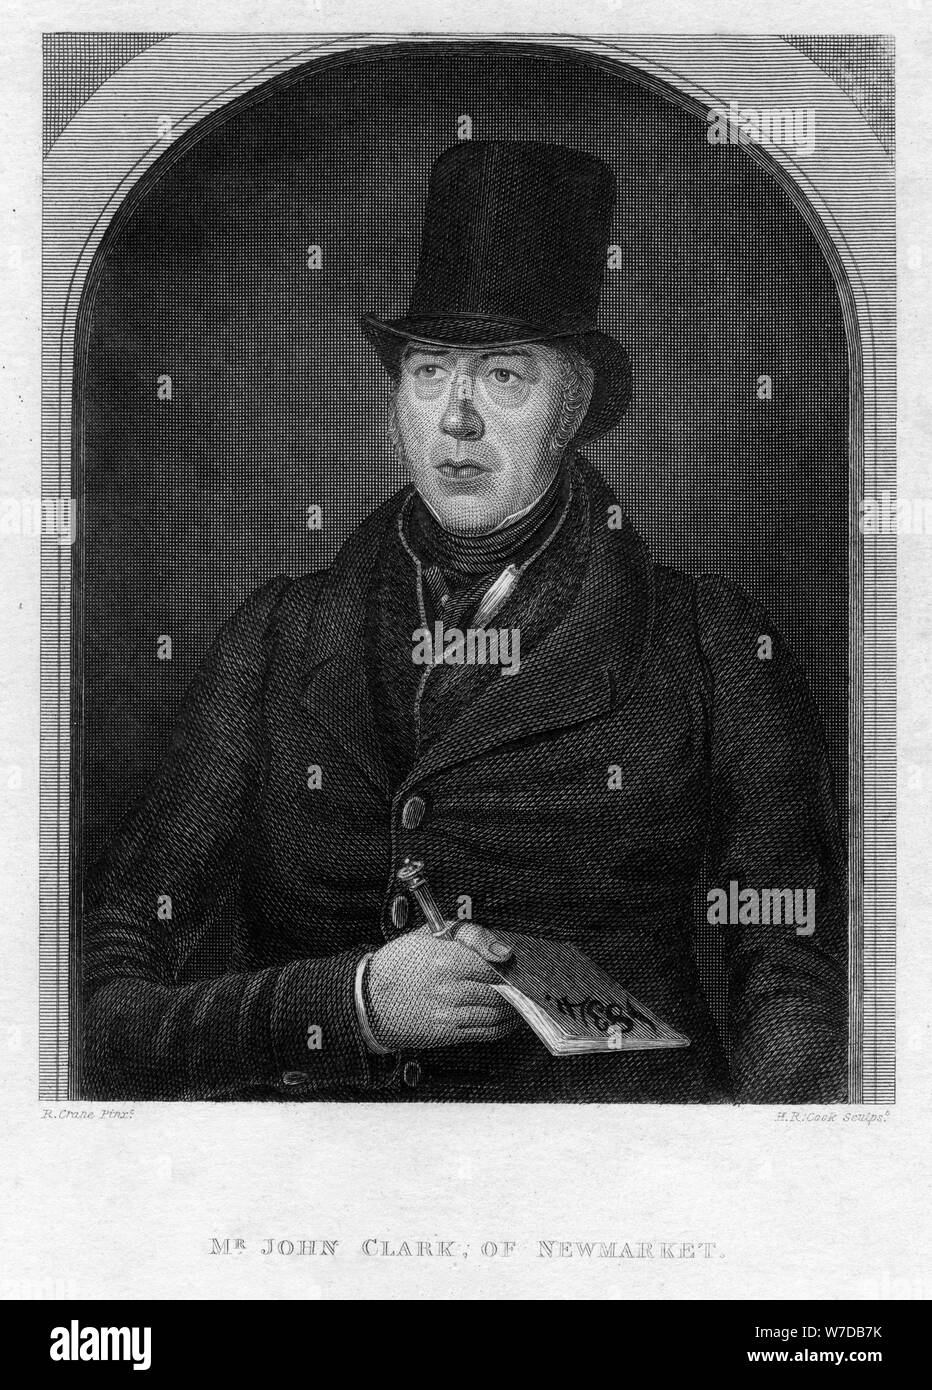 Mr John Clarke, of Newmarket, 1834. Artist: Henry R Cook Stock Photo